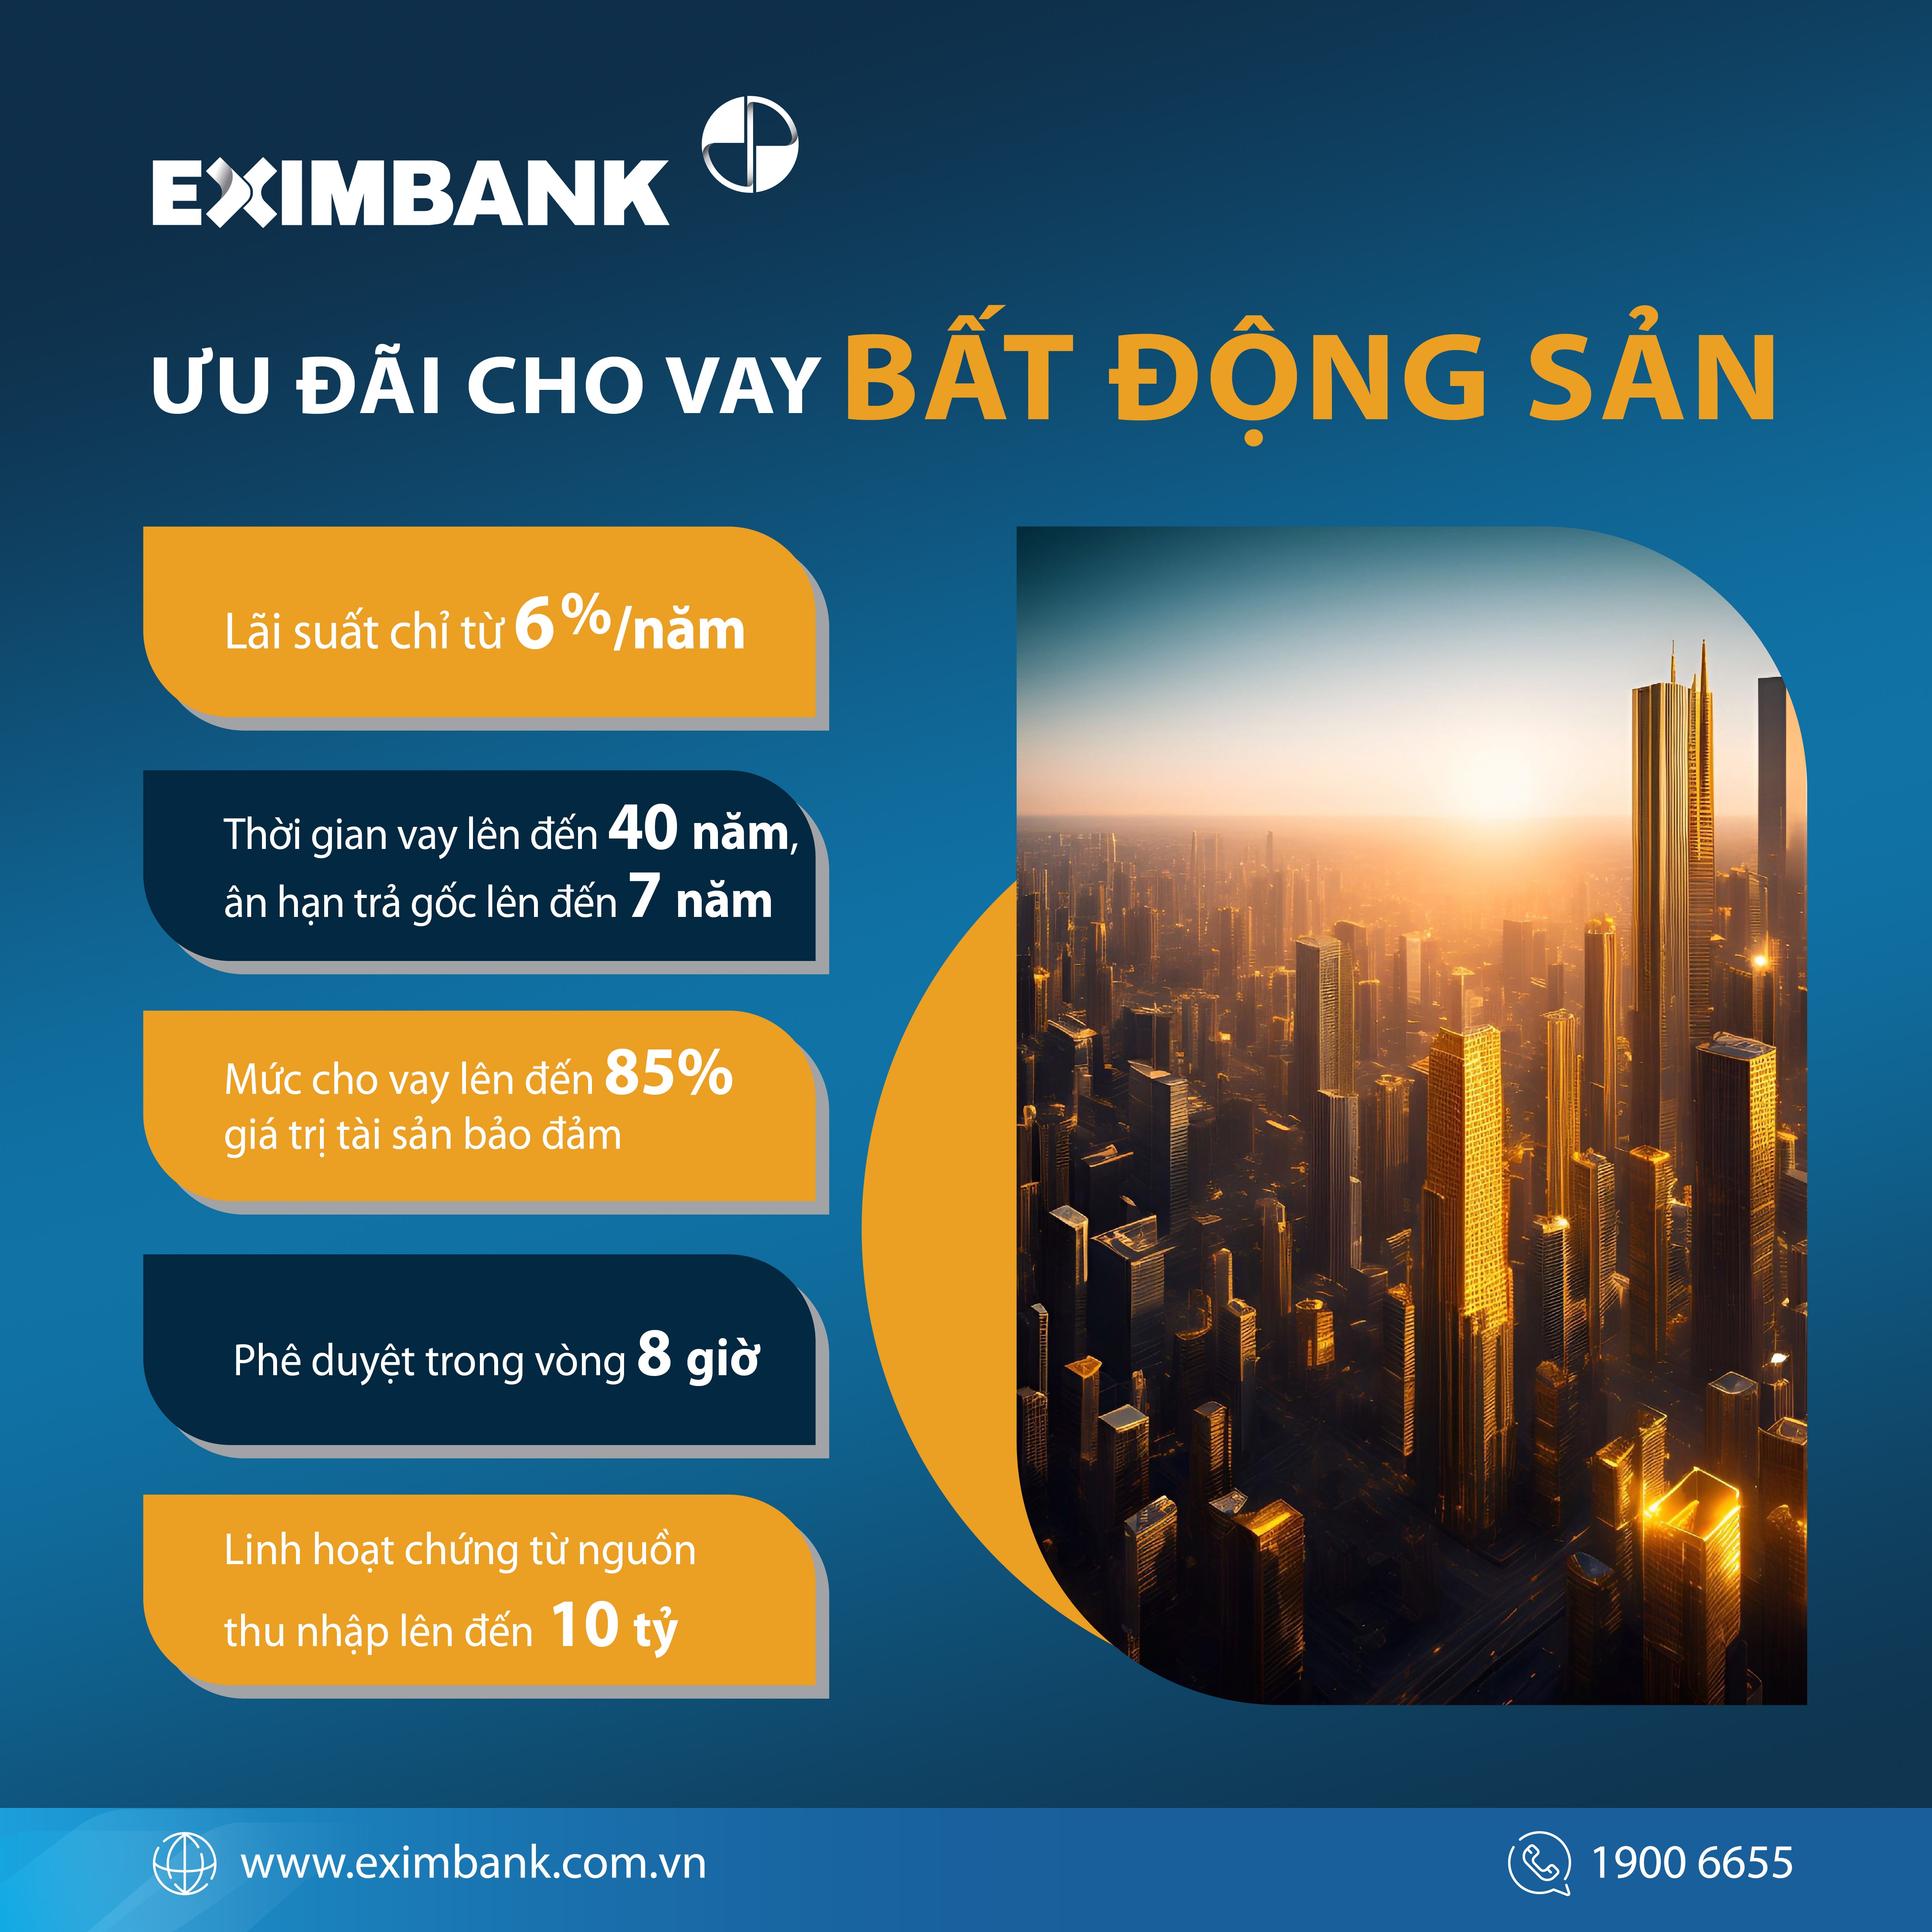 Eximbank 'mạnh tay' hỗ trợ gói vay bất động sản hấp dẫn